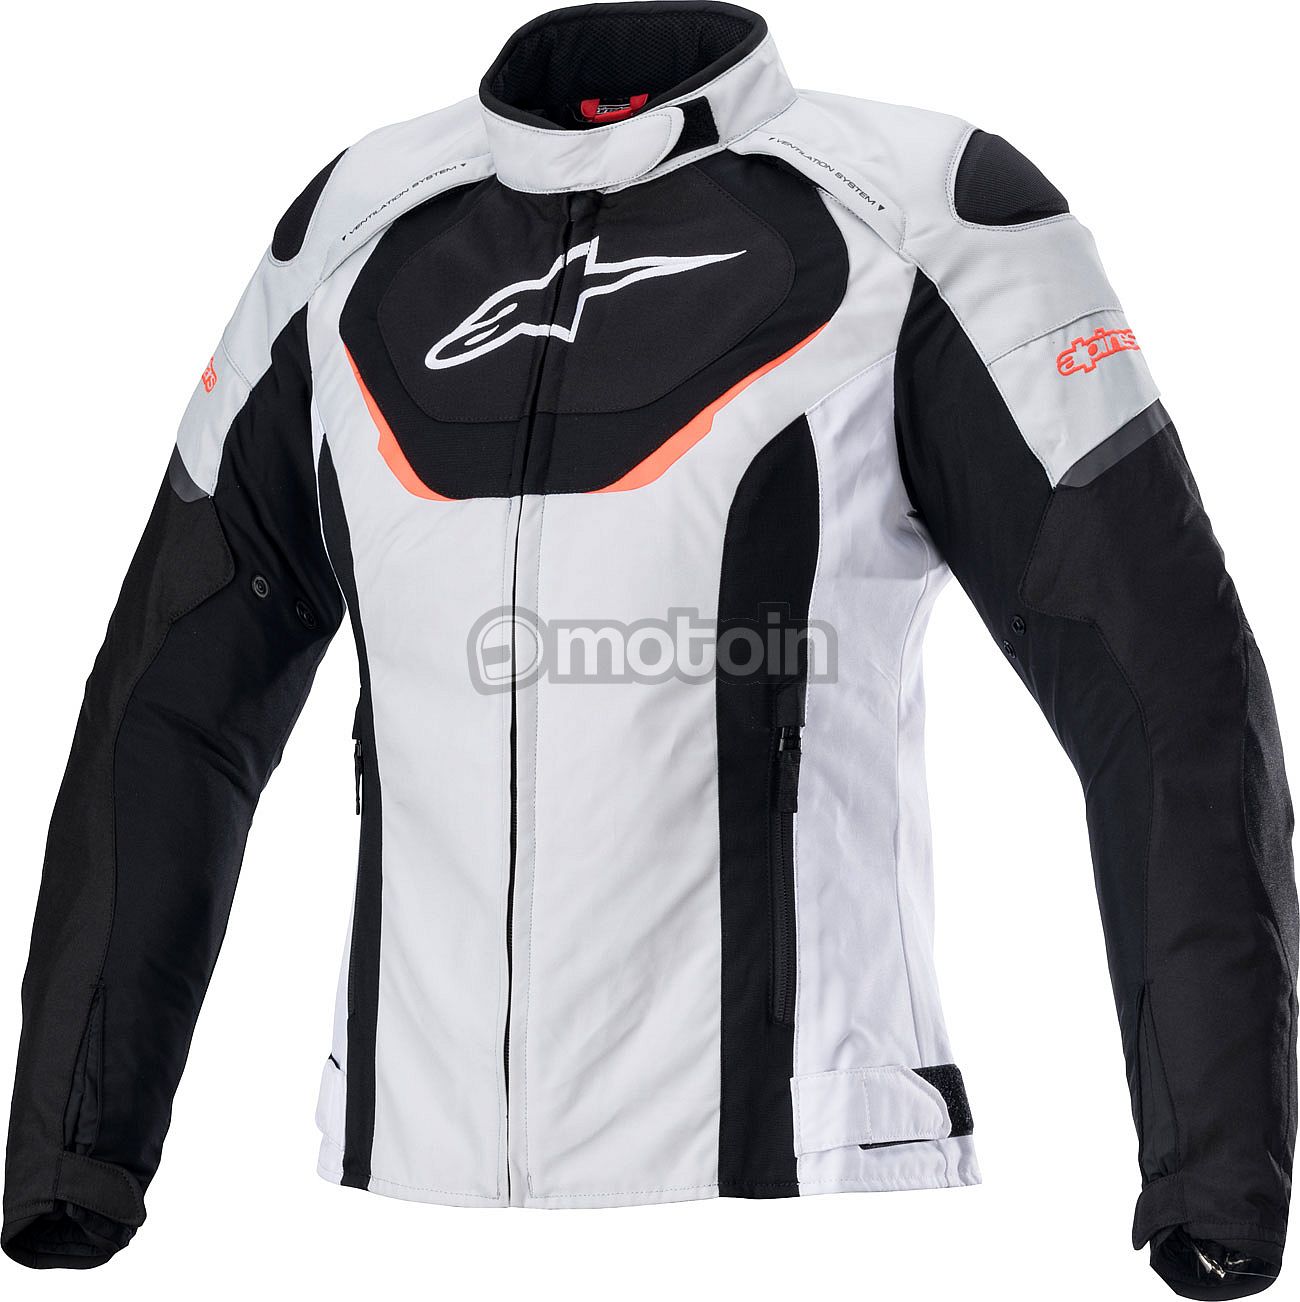 Alpinestars Stella T-Jaws V3, textile jacket waterproof women - motoin.de